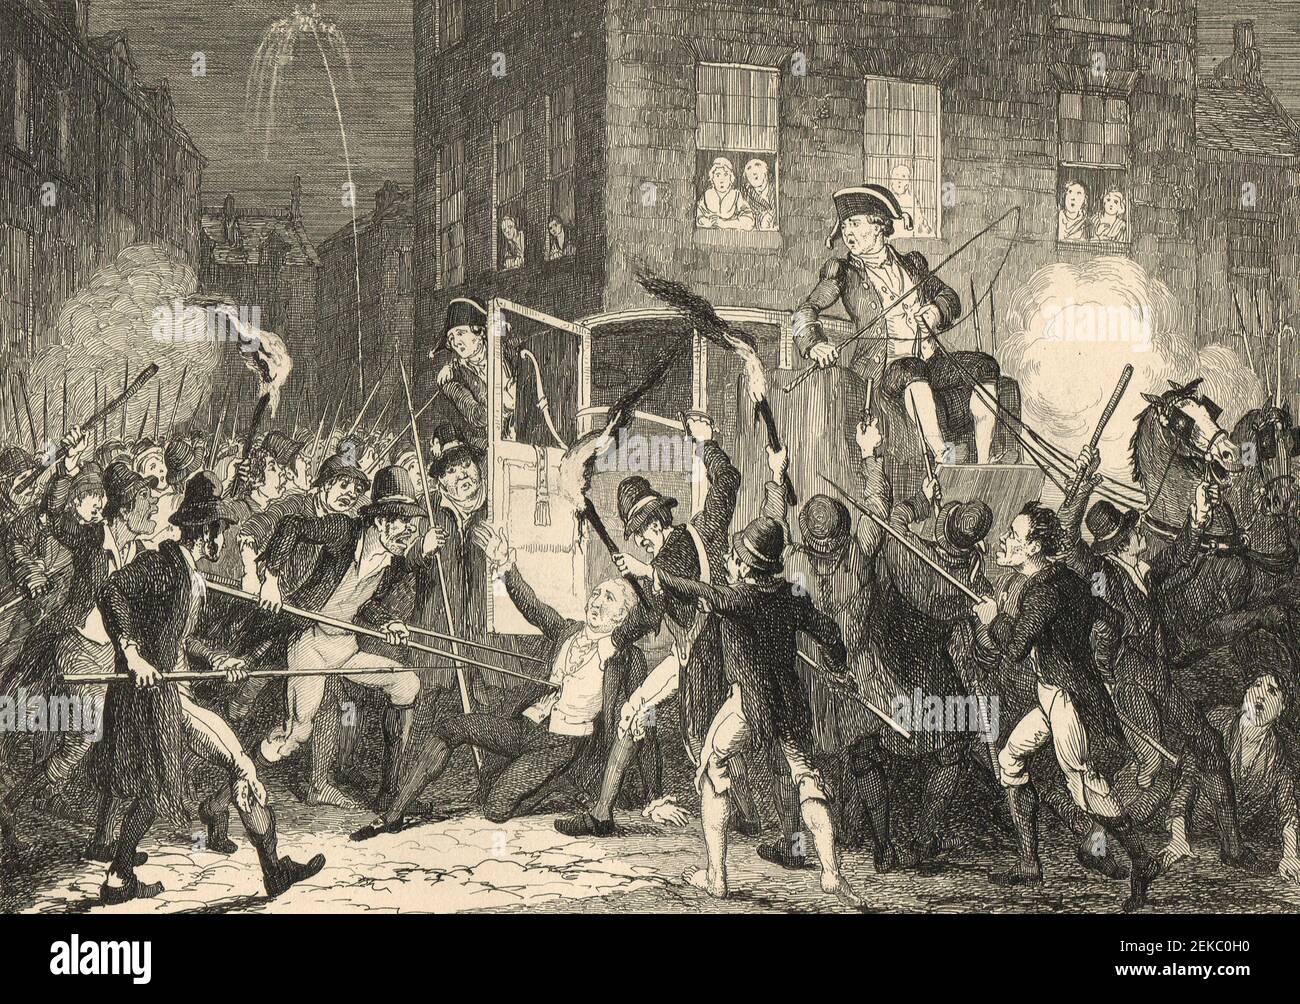 Le meurtre de Lord Kilwarden, Lord Chief Justice d'Irlande, 23 juillet 1803, lors de la rébellion irlandaise de 1803 Banque D'Images